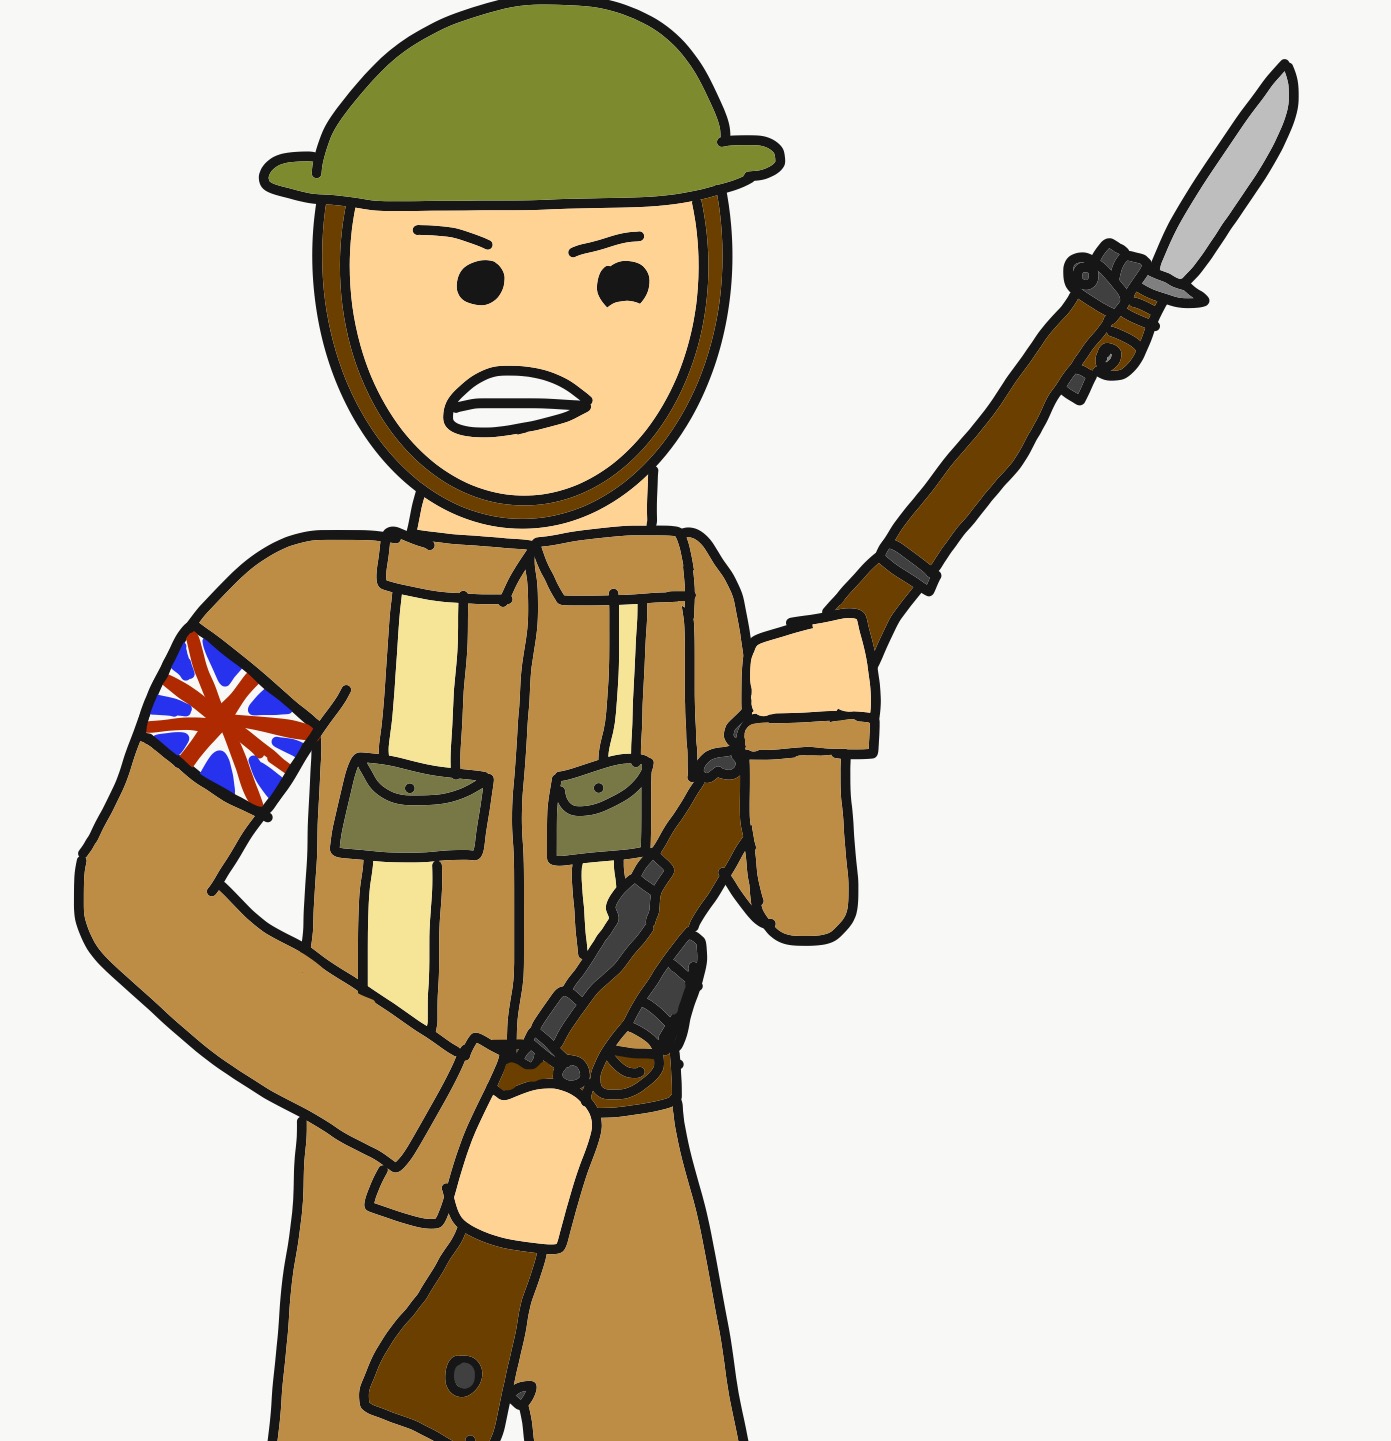 WW1 British soldier by Reaper2545 on DeviantArt